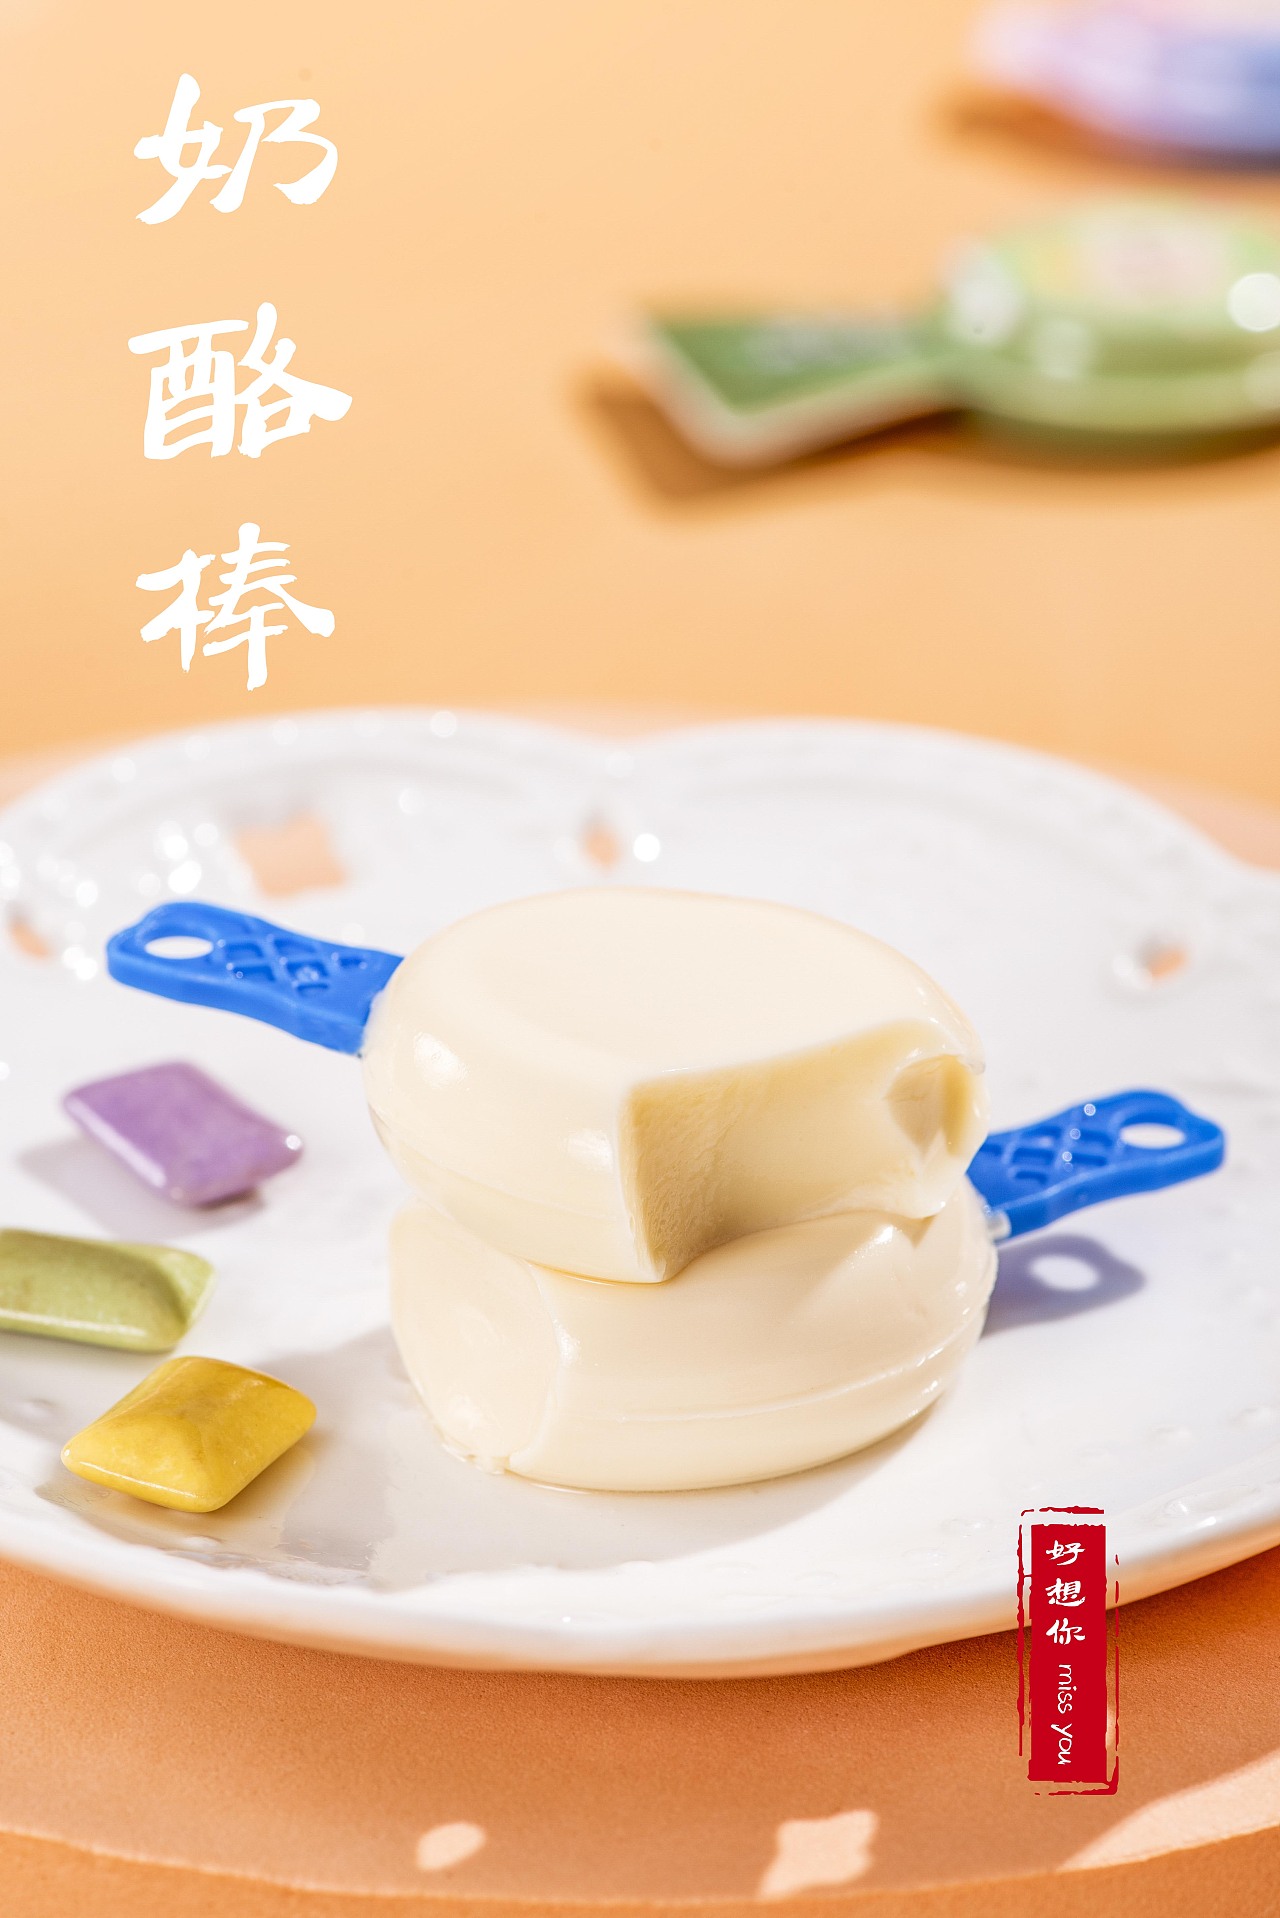 【2入綜合組】牛奶棒/原味+巧克力 - 線上購物 - 黃源興餅店有限公司